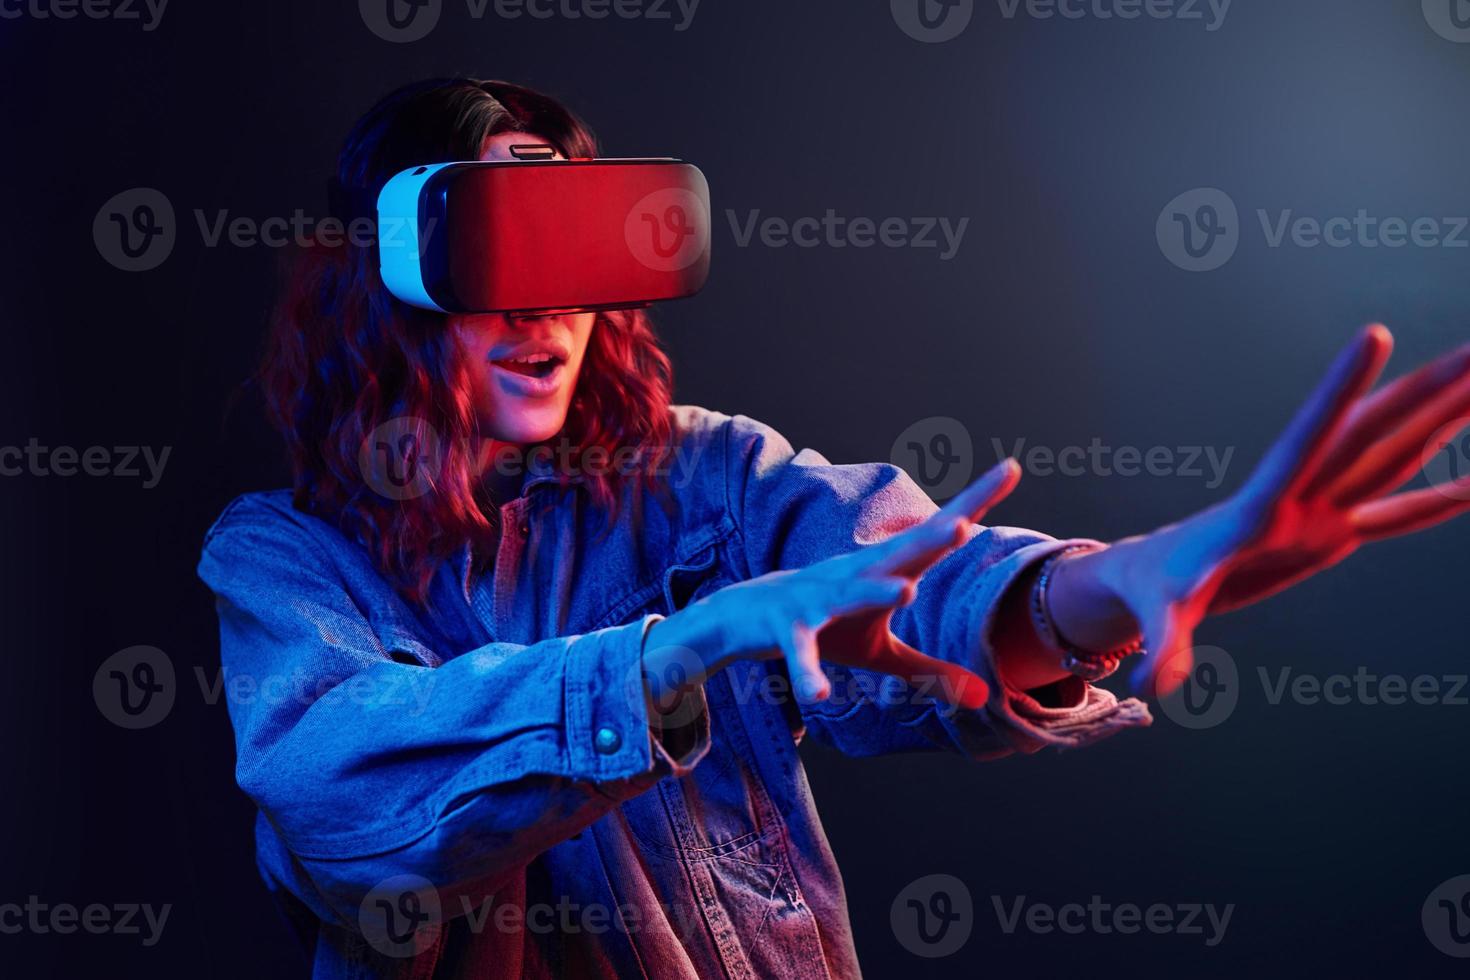 expresión facial de una joven con gafas de realidad virtual en la cabeza en neón rojo y azul en el estudio foto